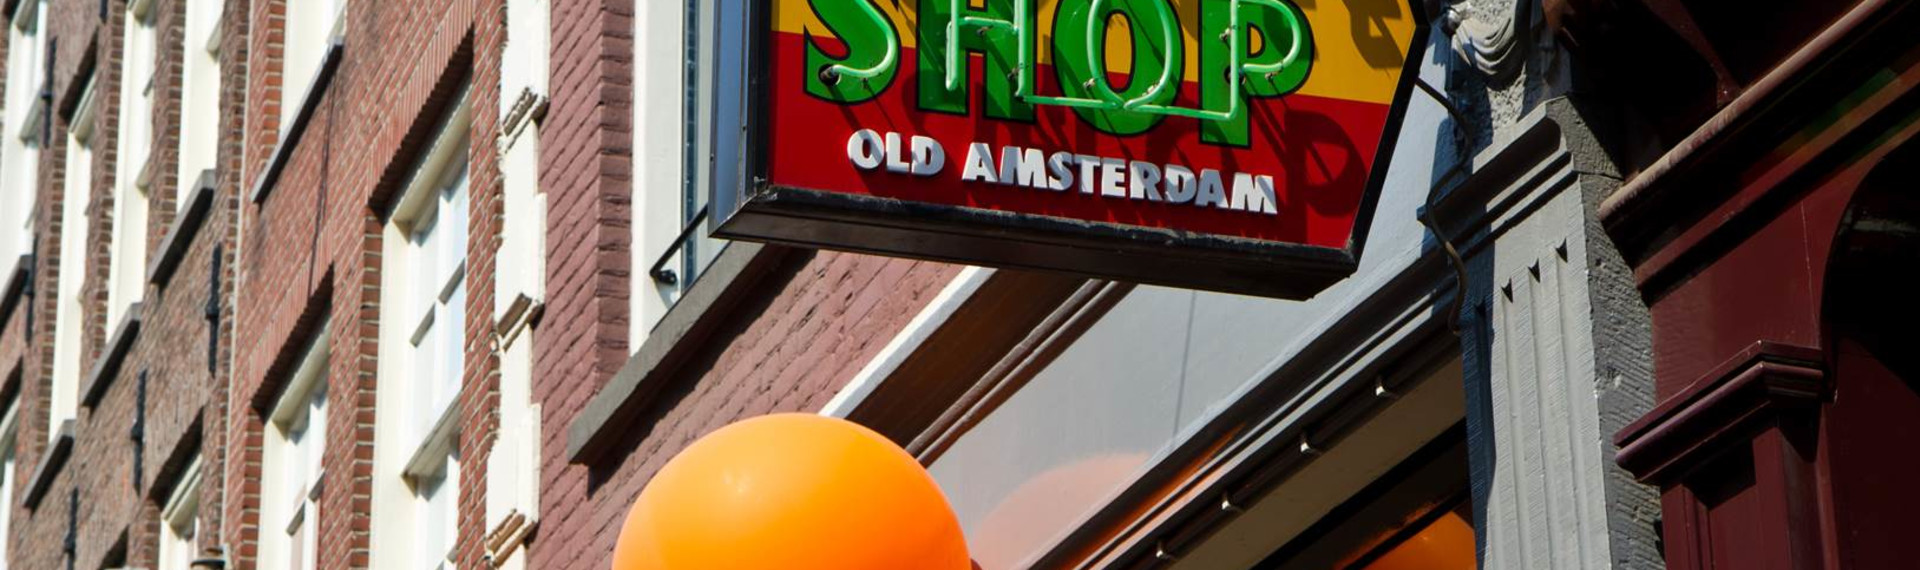 Coffeeshop-Guide in Amsterdam | Jetzt mit Pissup Reisen buchen!